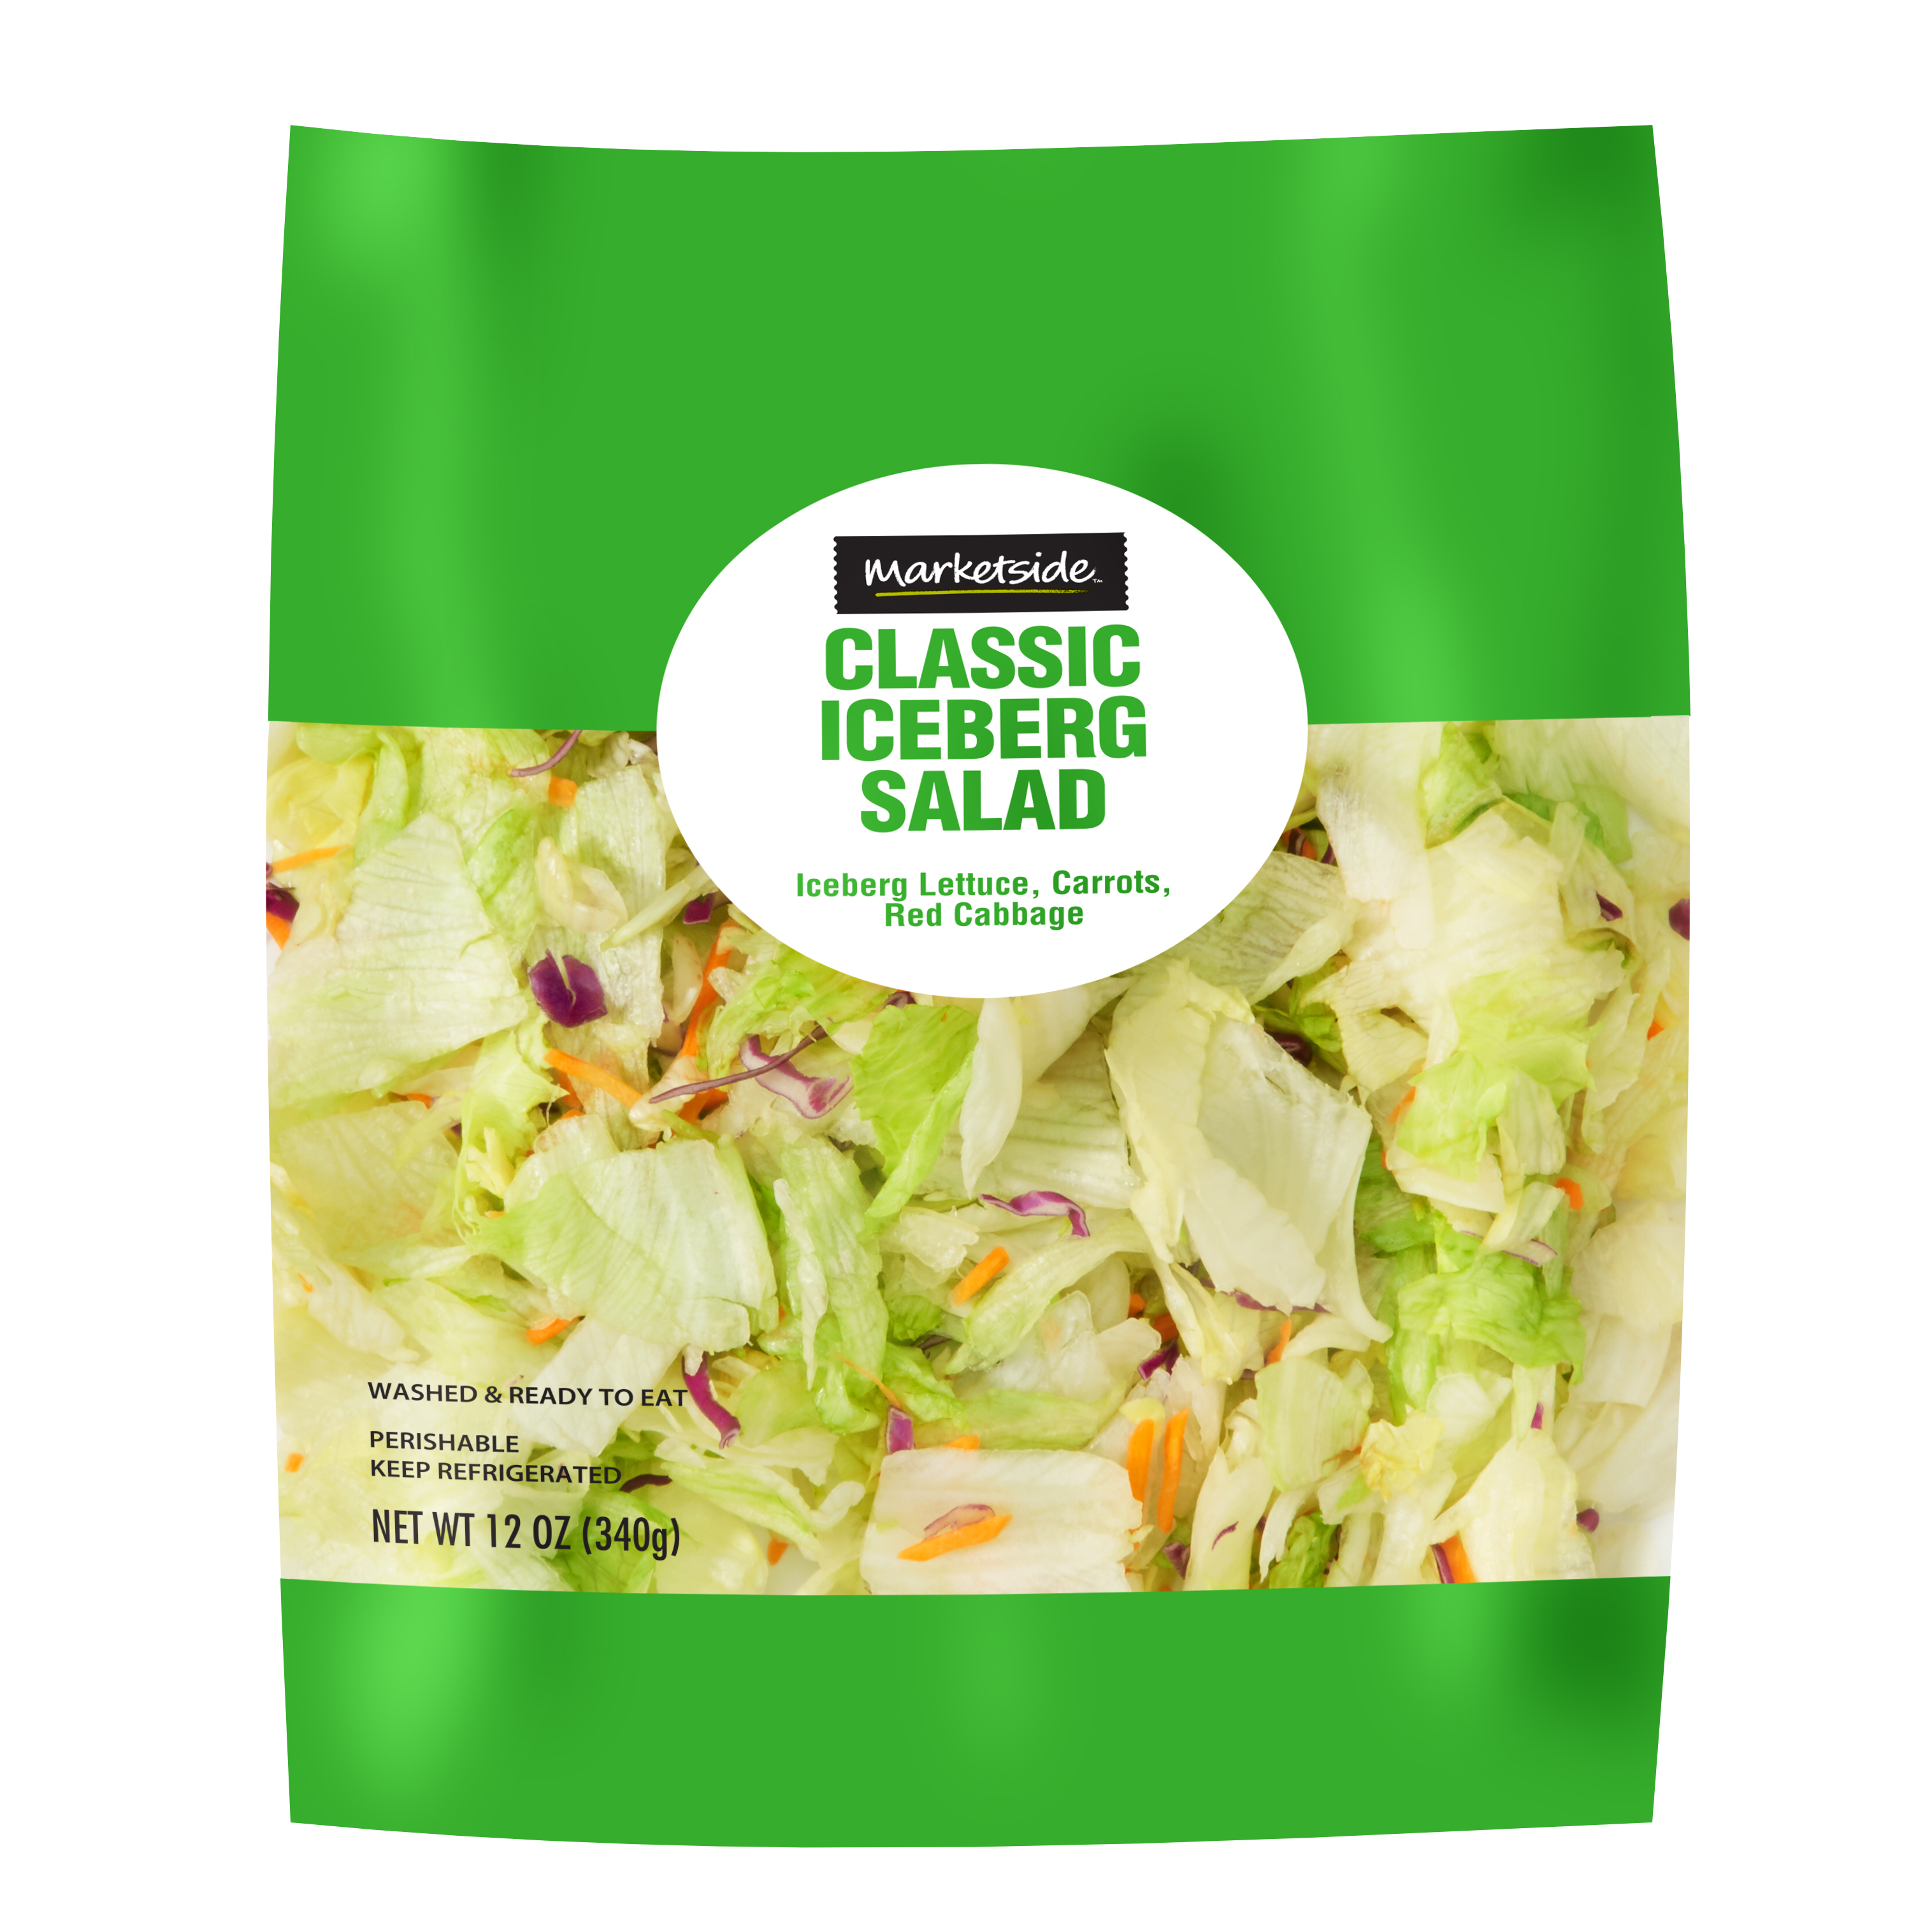 Marketside Classic Iceberg Salad, 12 oz Bag, Fresh - image 1 of 5